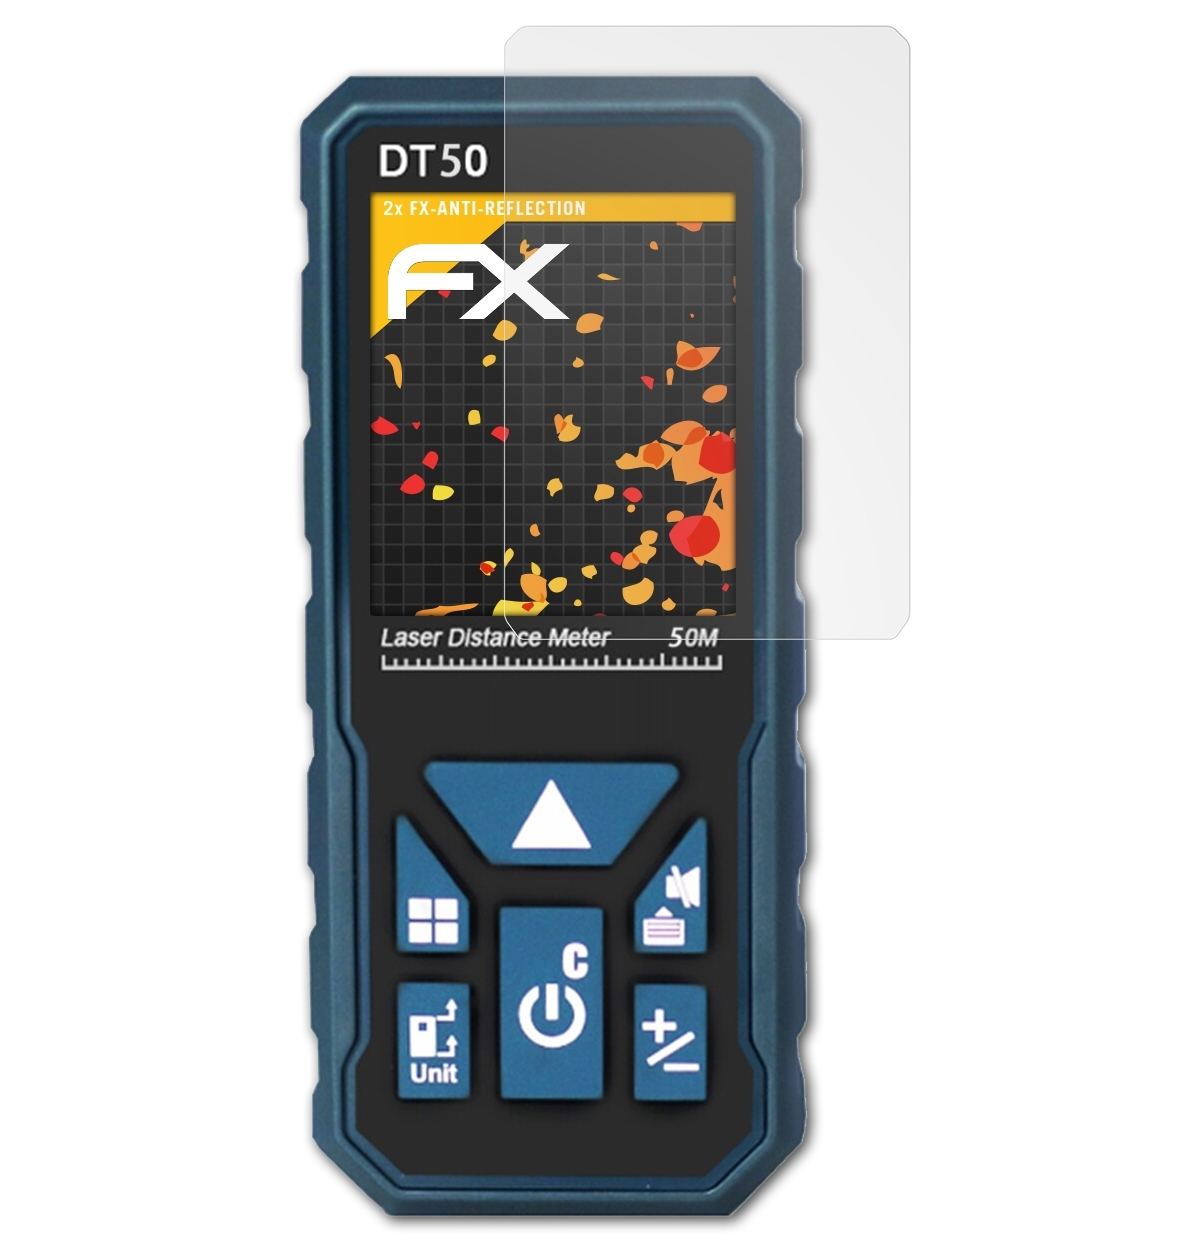 DTAPE DT50) ATFOLIX 2x Displayschutz(für FX-Antireflex